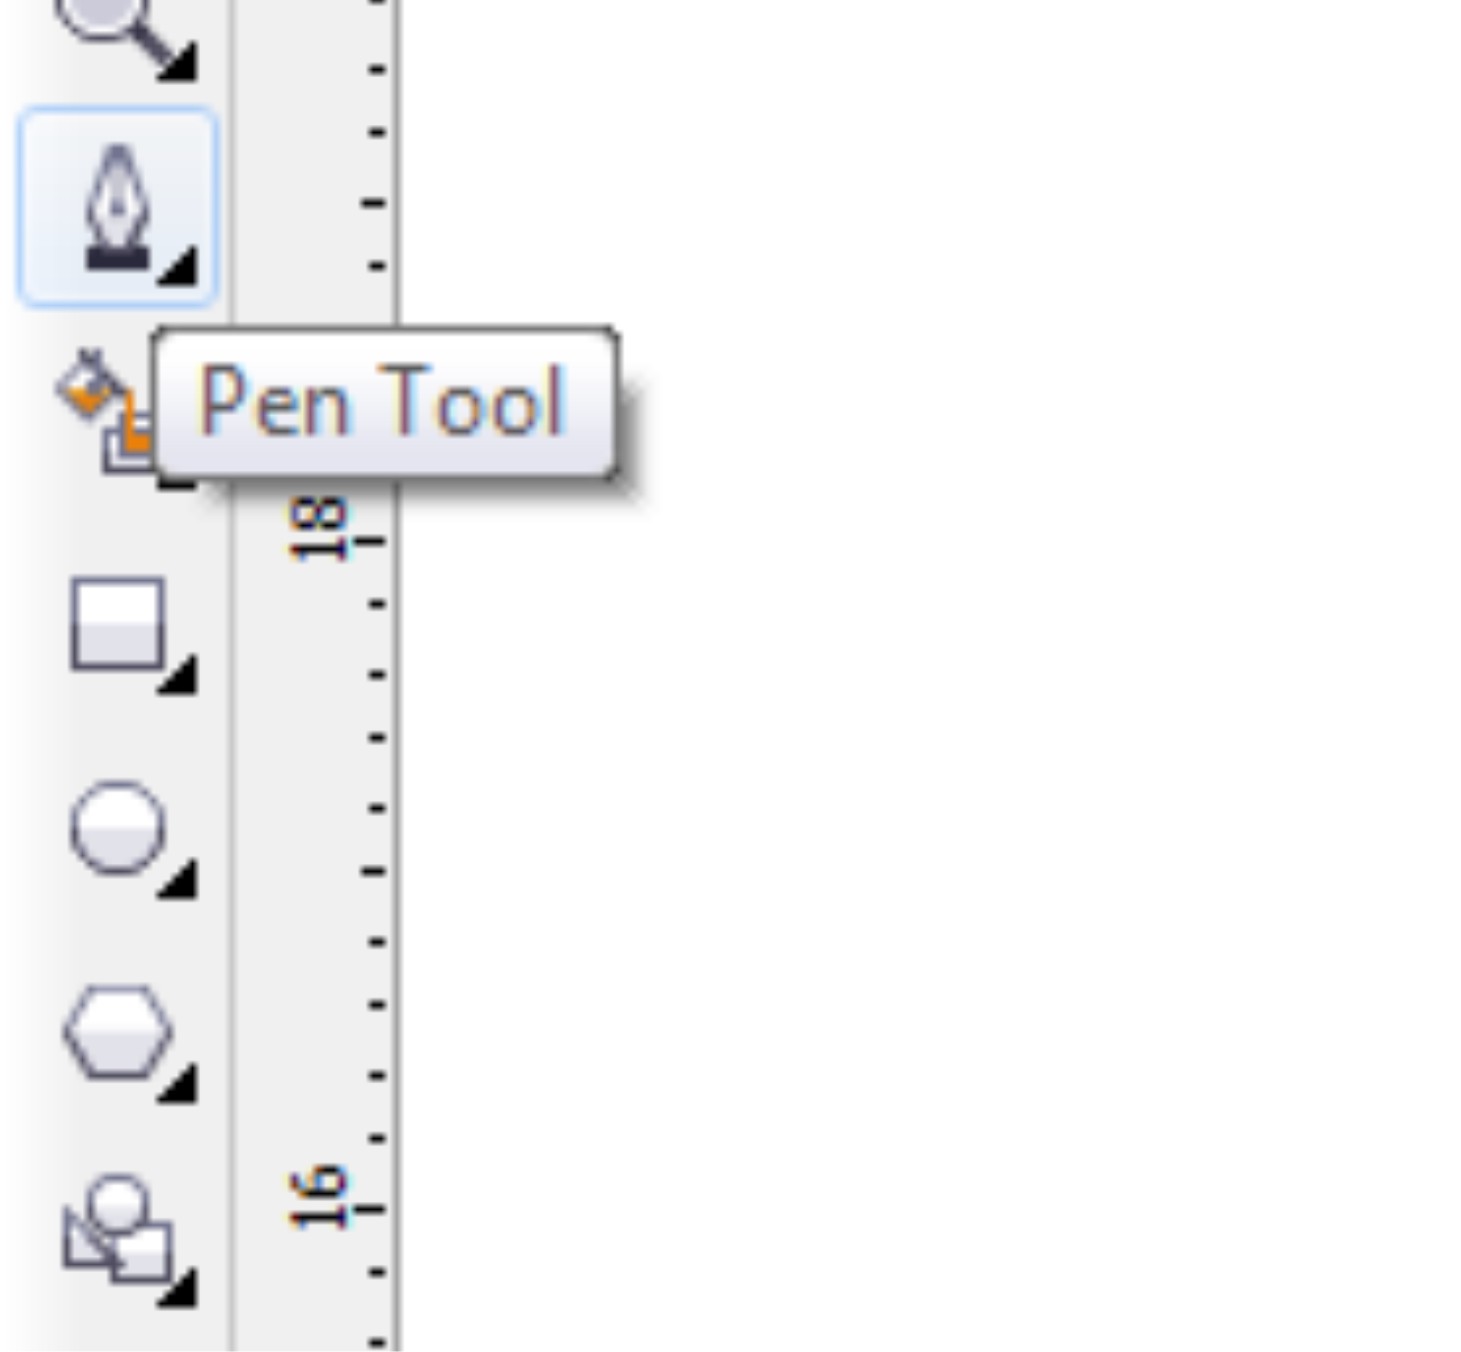 setelah itu kita klik buat garis menggunakan pen tool klik simbol pen tool disebelah kiri kalau